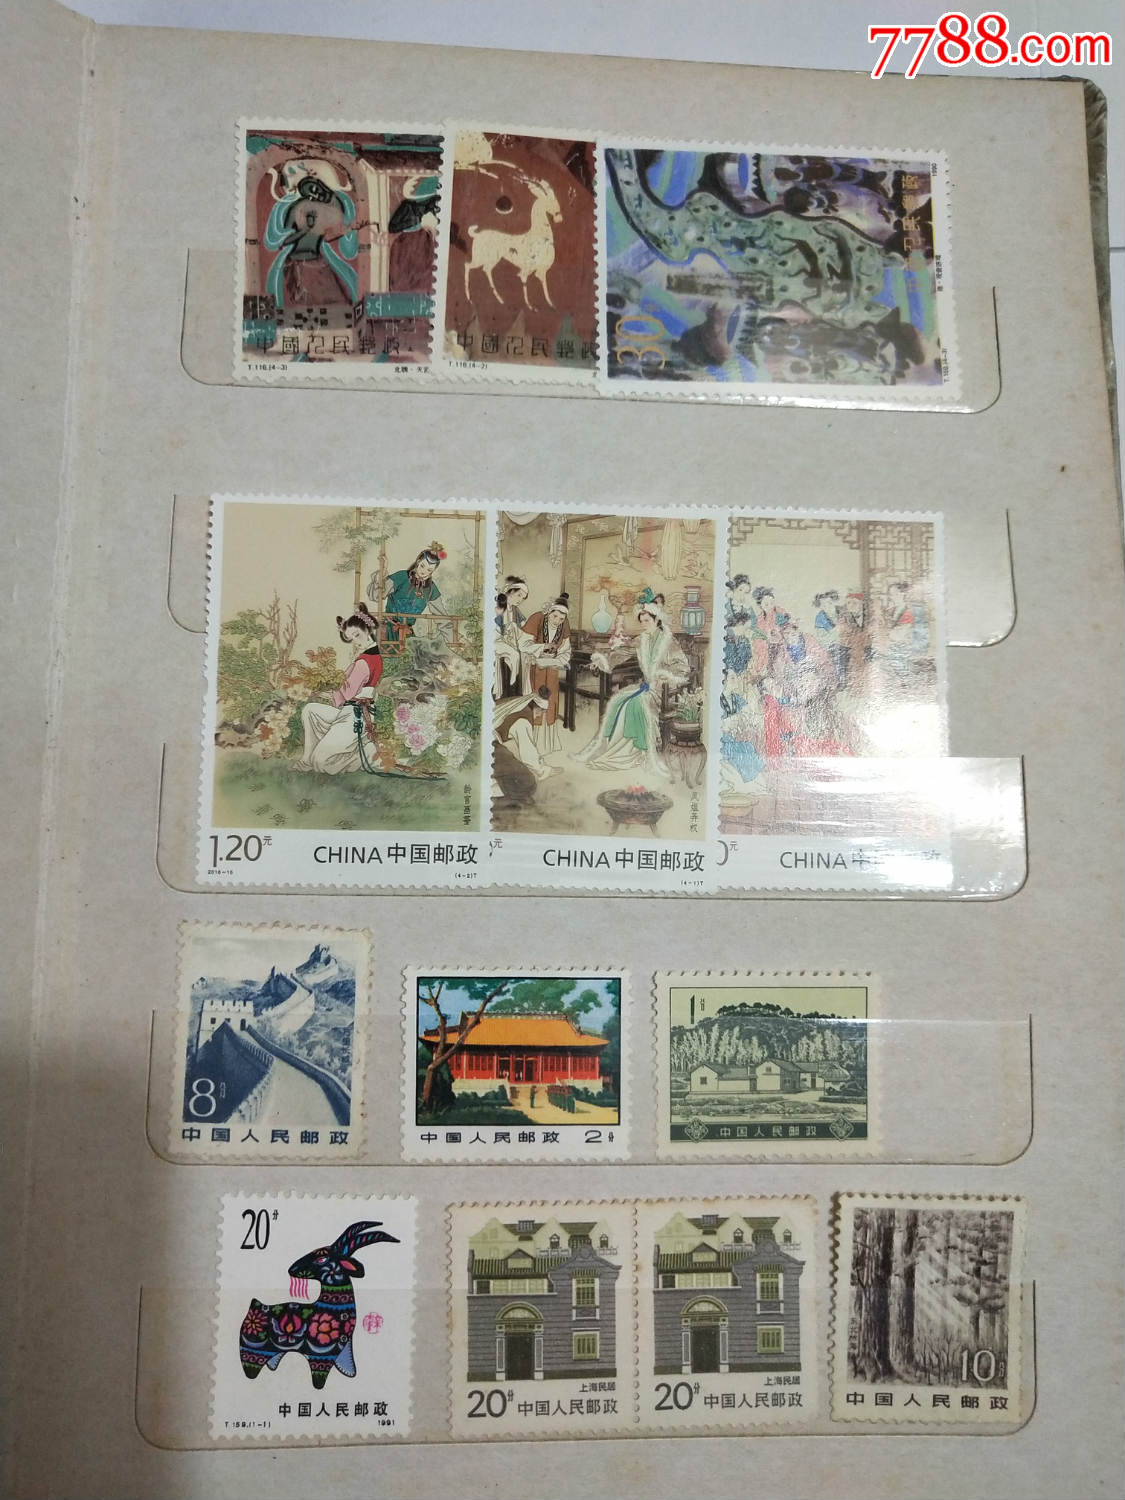 一组邮票,都是单张新票,最后一图是旧票,合售